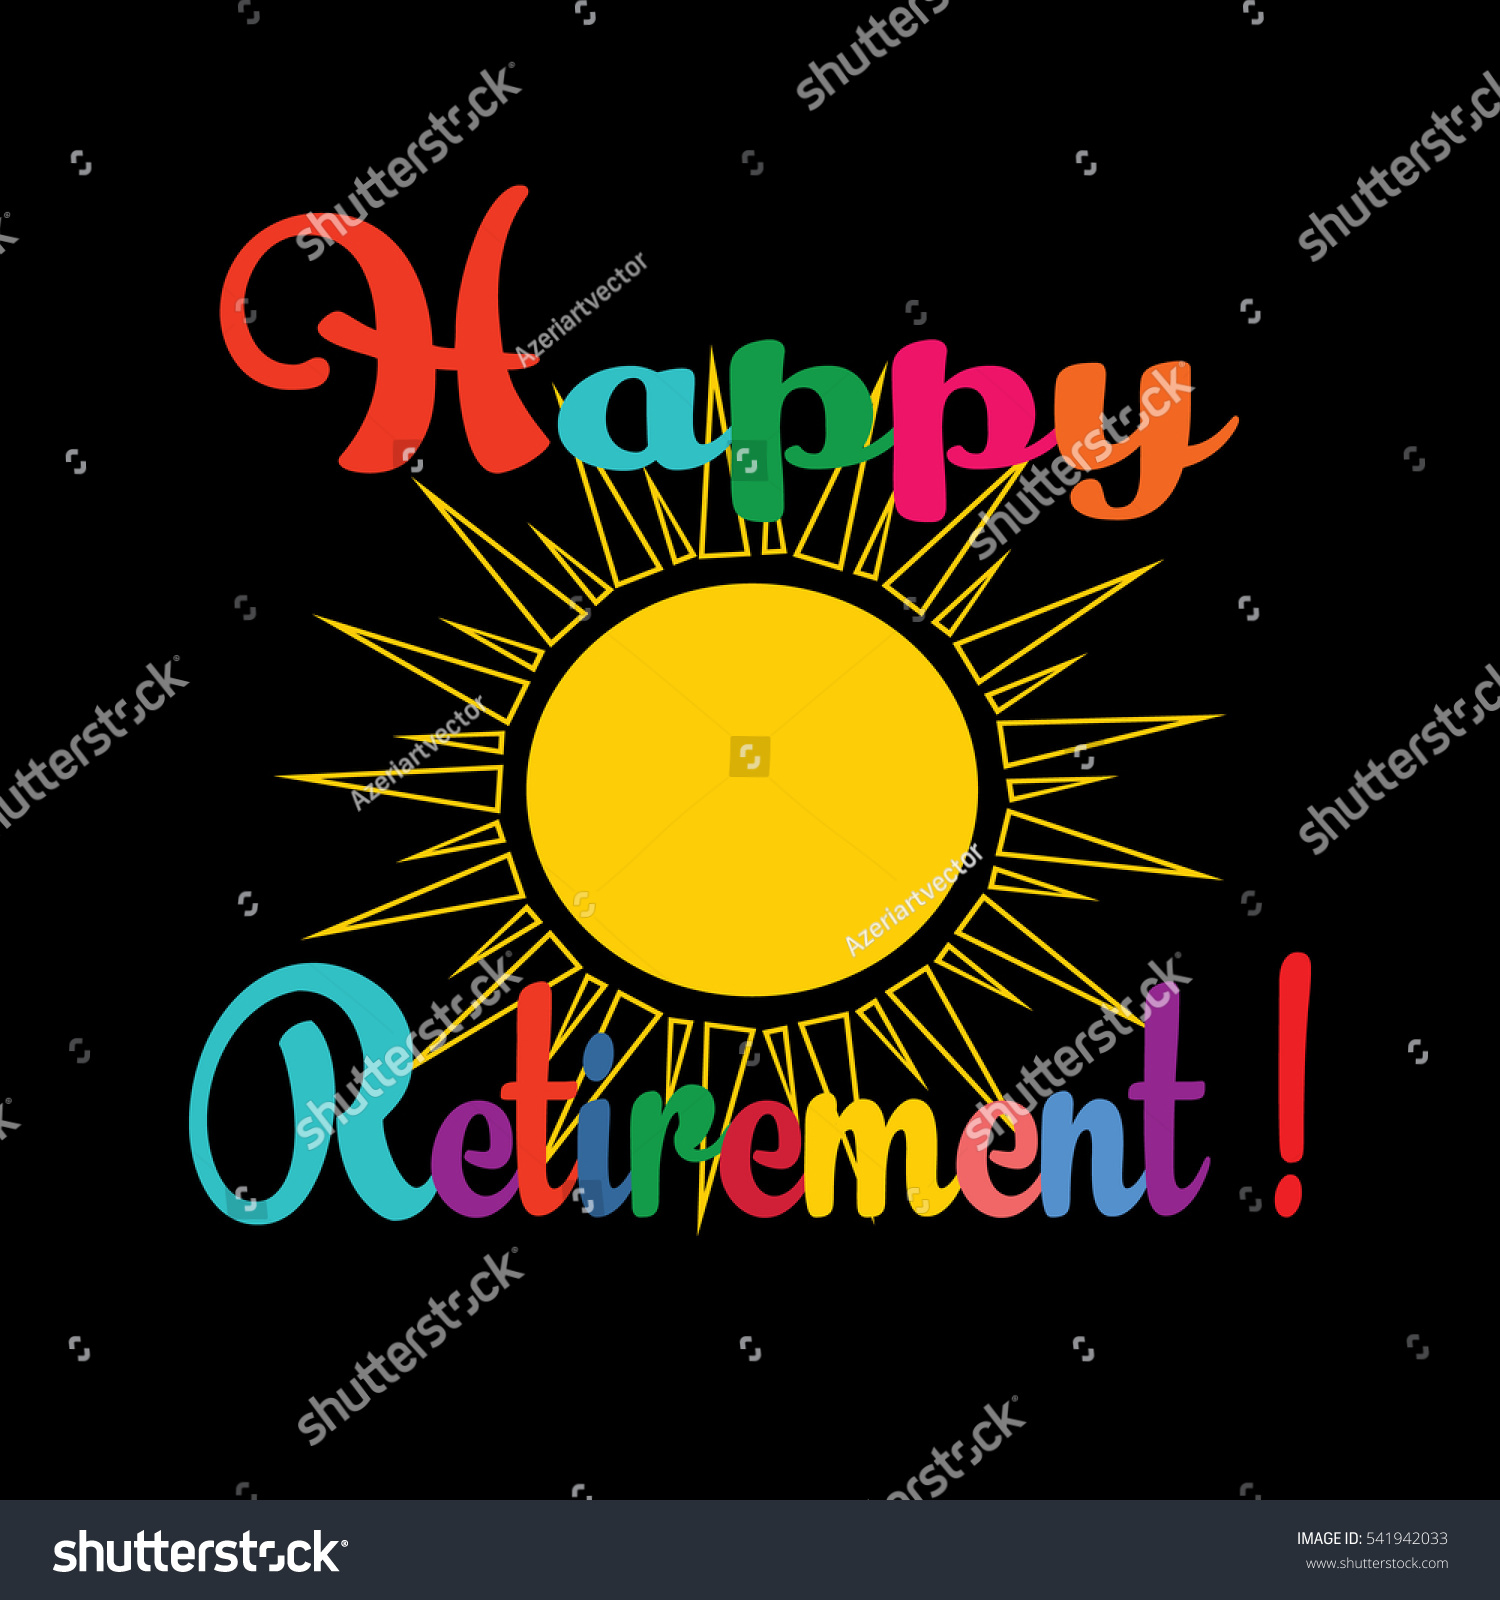 Happy Retirement Vector De Stock Libre De Regalías 541942033